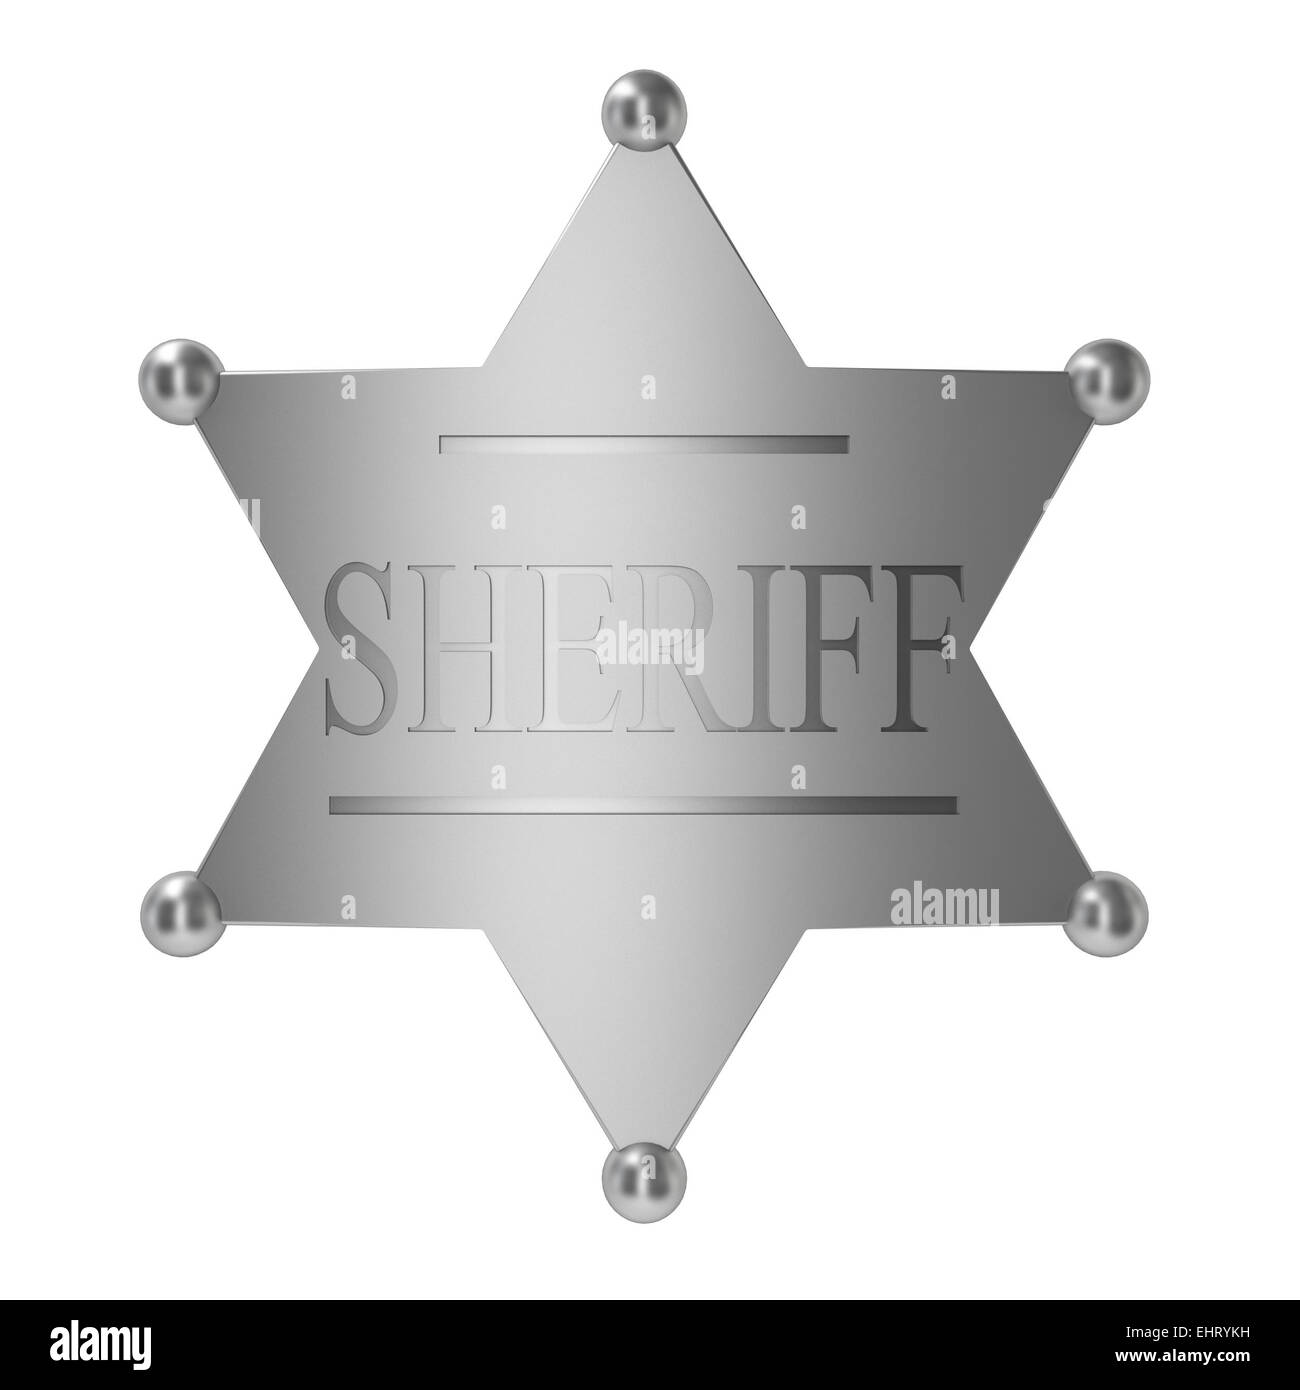 Sheriff badge. 3d illustration on white background Stock Photo